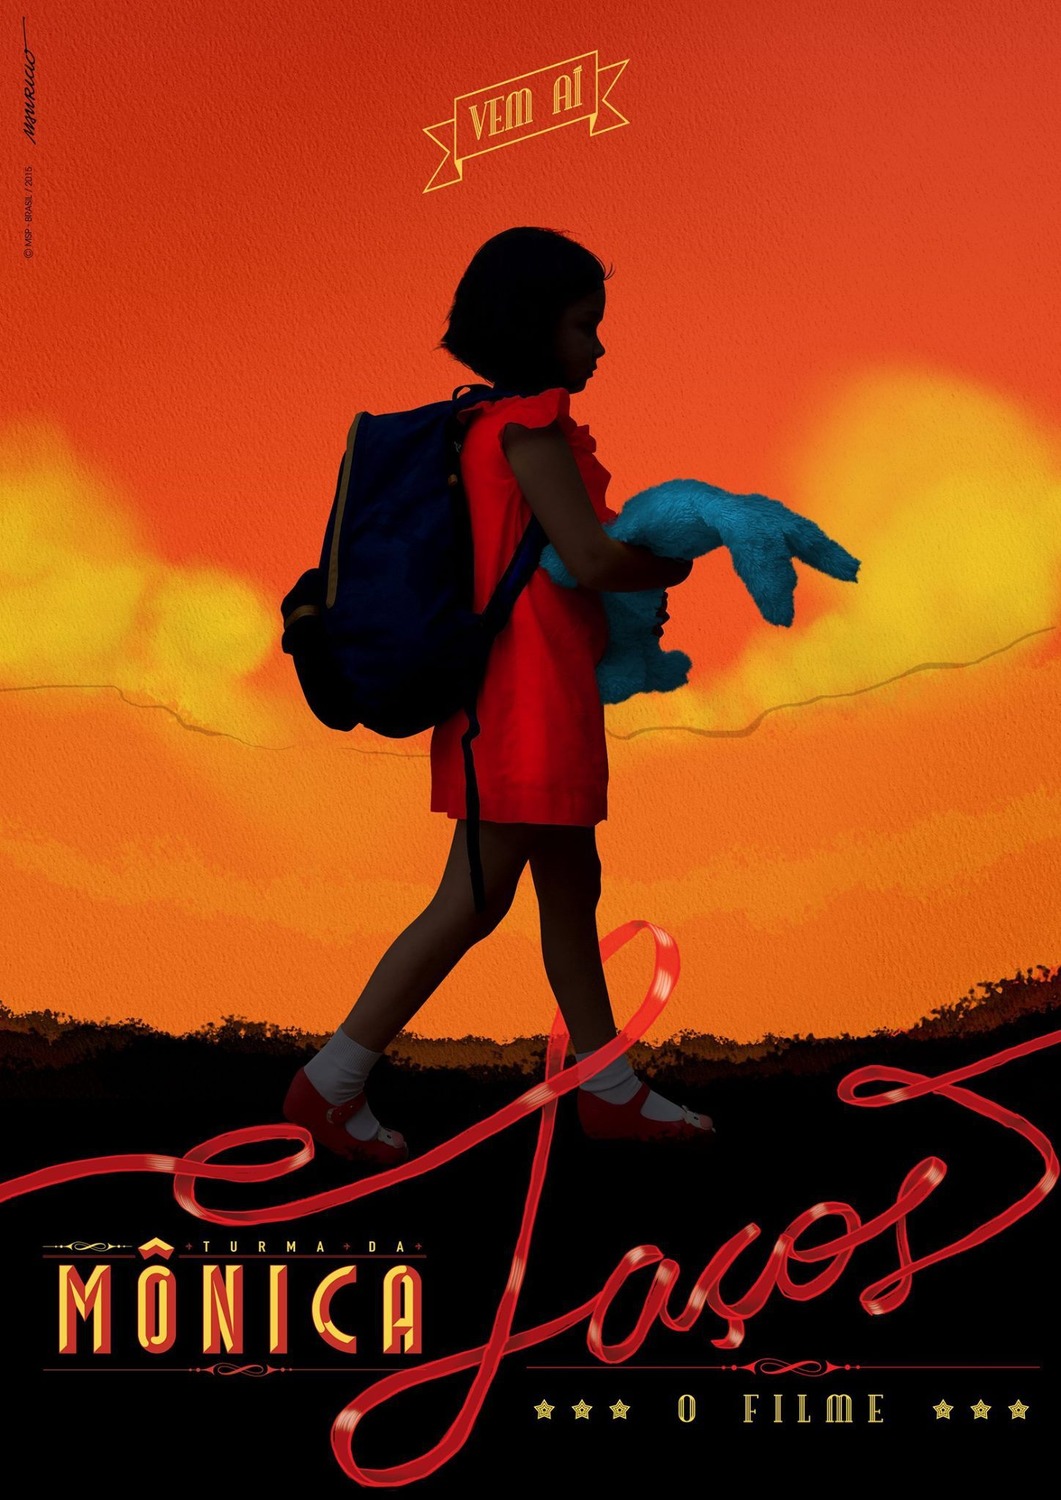 Extra Large Movie Poster Image for Turma da Mônica: Laços (#1 of 2)